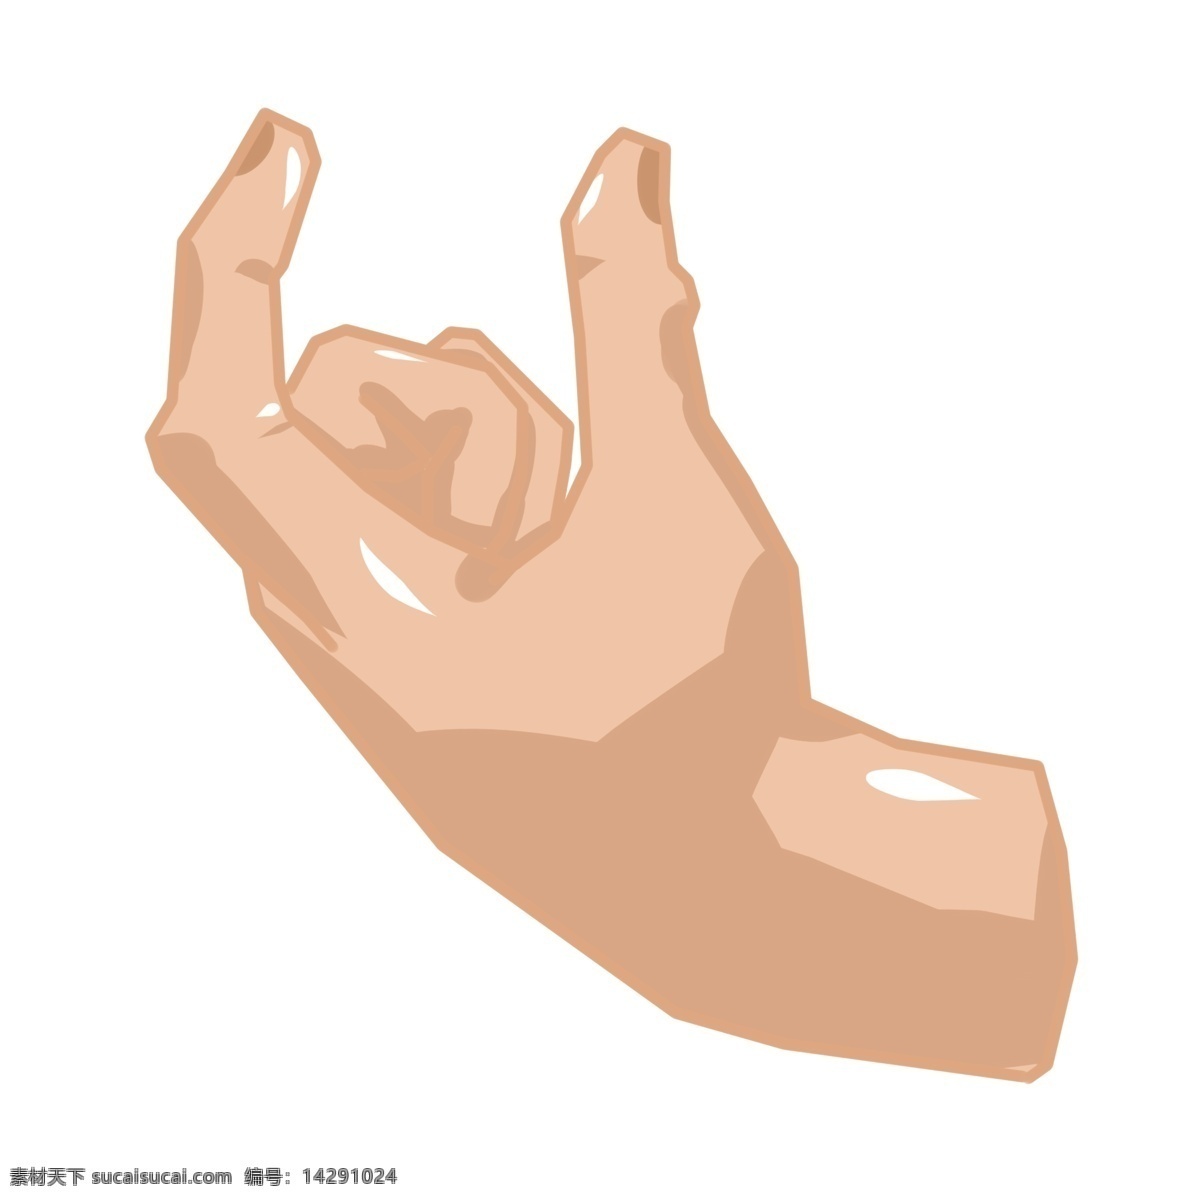 优 型 造型 手势 插画 优型手势插画 一只左手手势 食指大拇指 半圆手势 紧握的拳头 创意手势插画